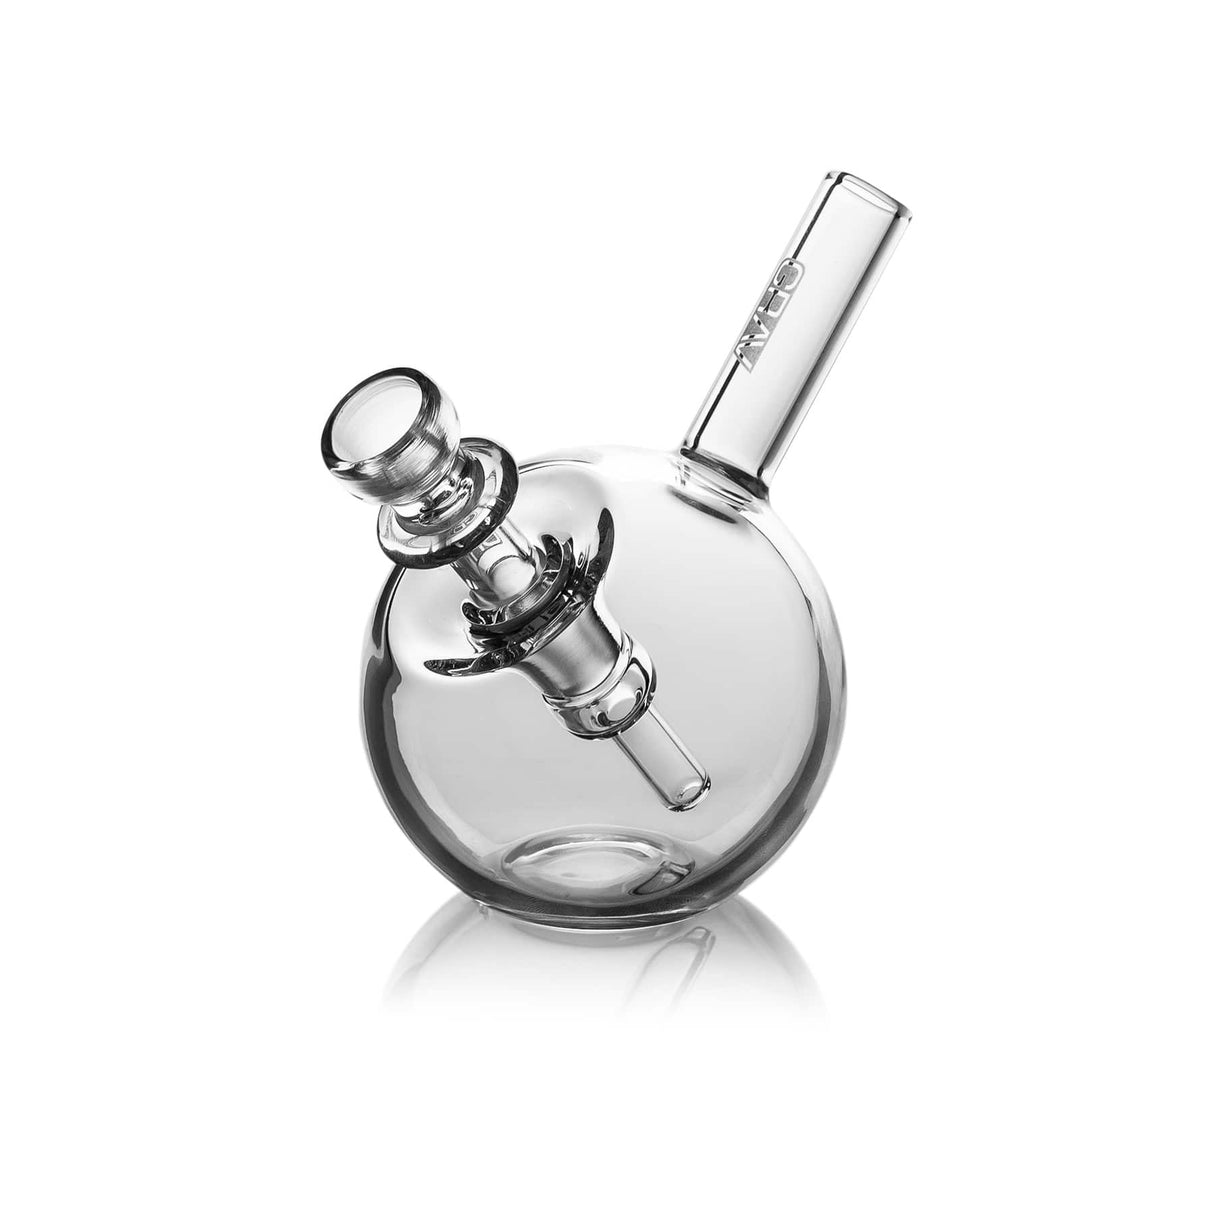 GRAV Hourglass Pocket Bubbler